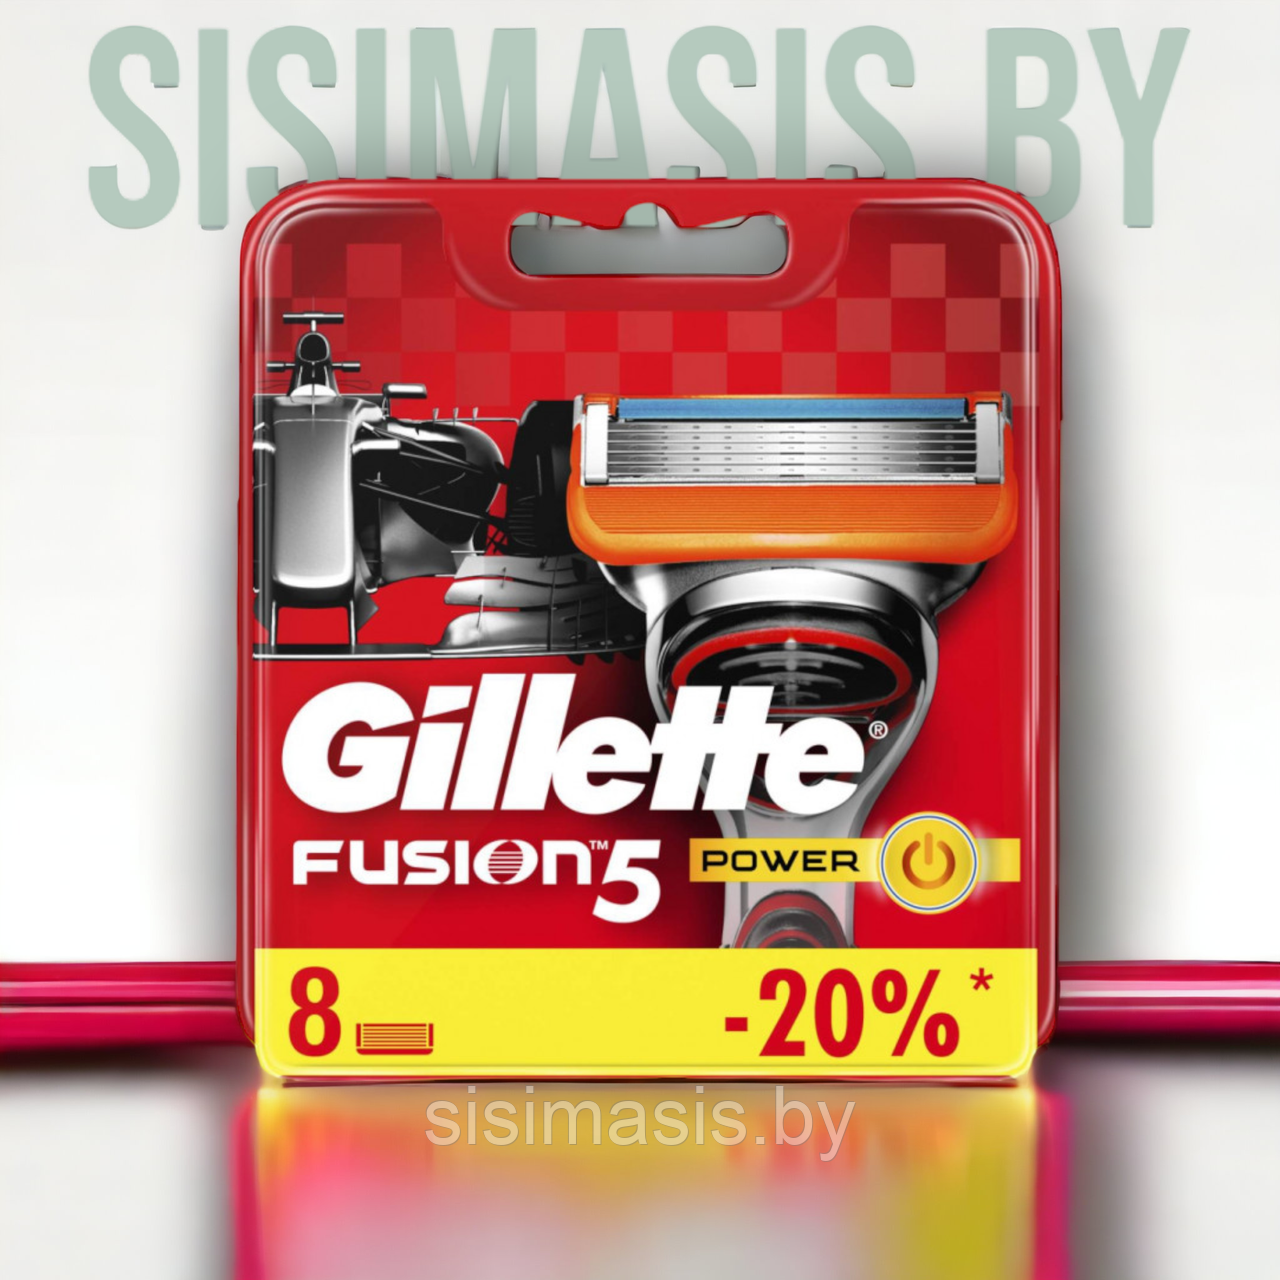 Сменные кассеты для бритья Gillette Fusion5 Proglide Power, оригинал, 8 шт.